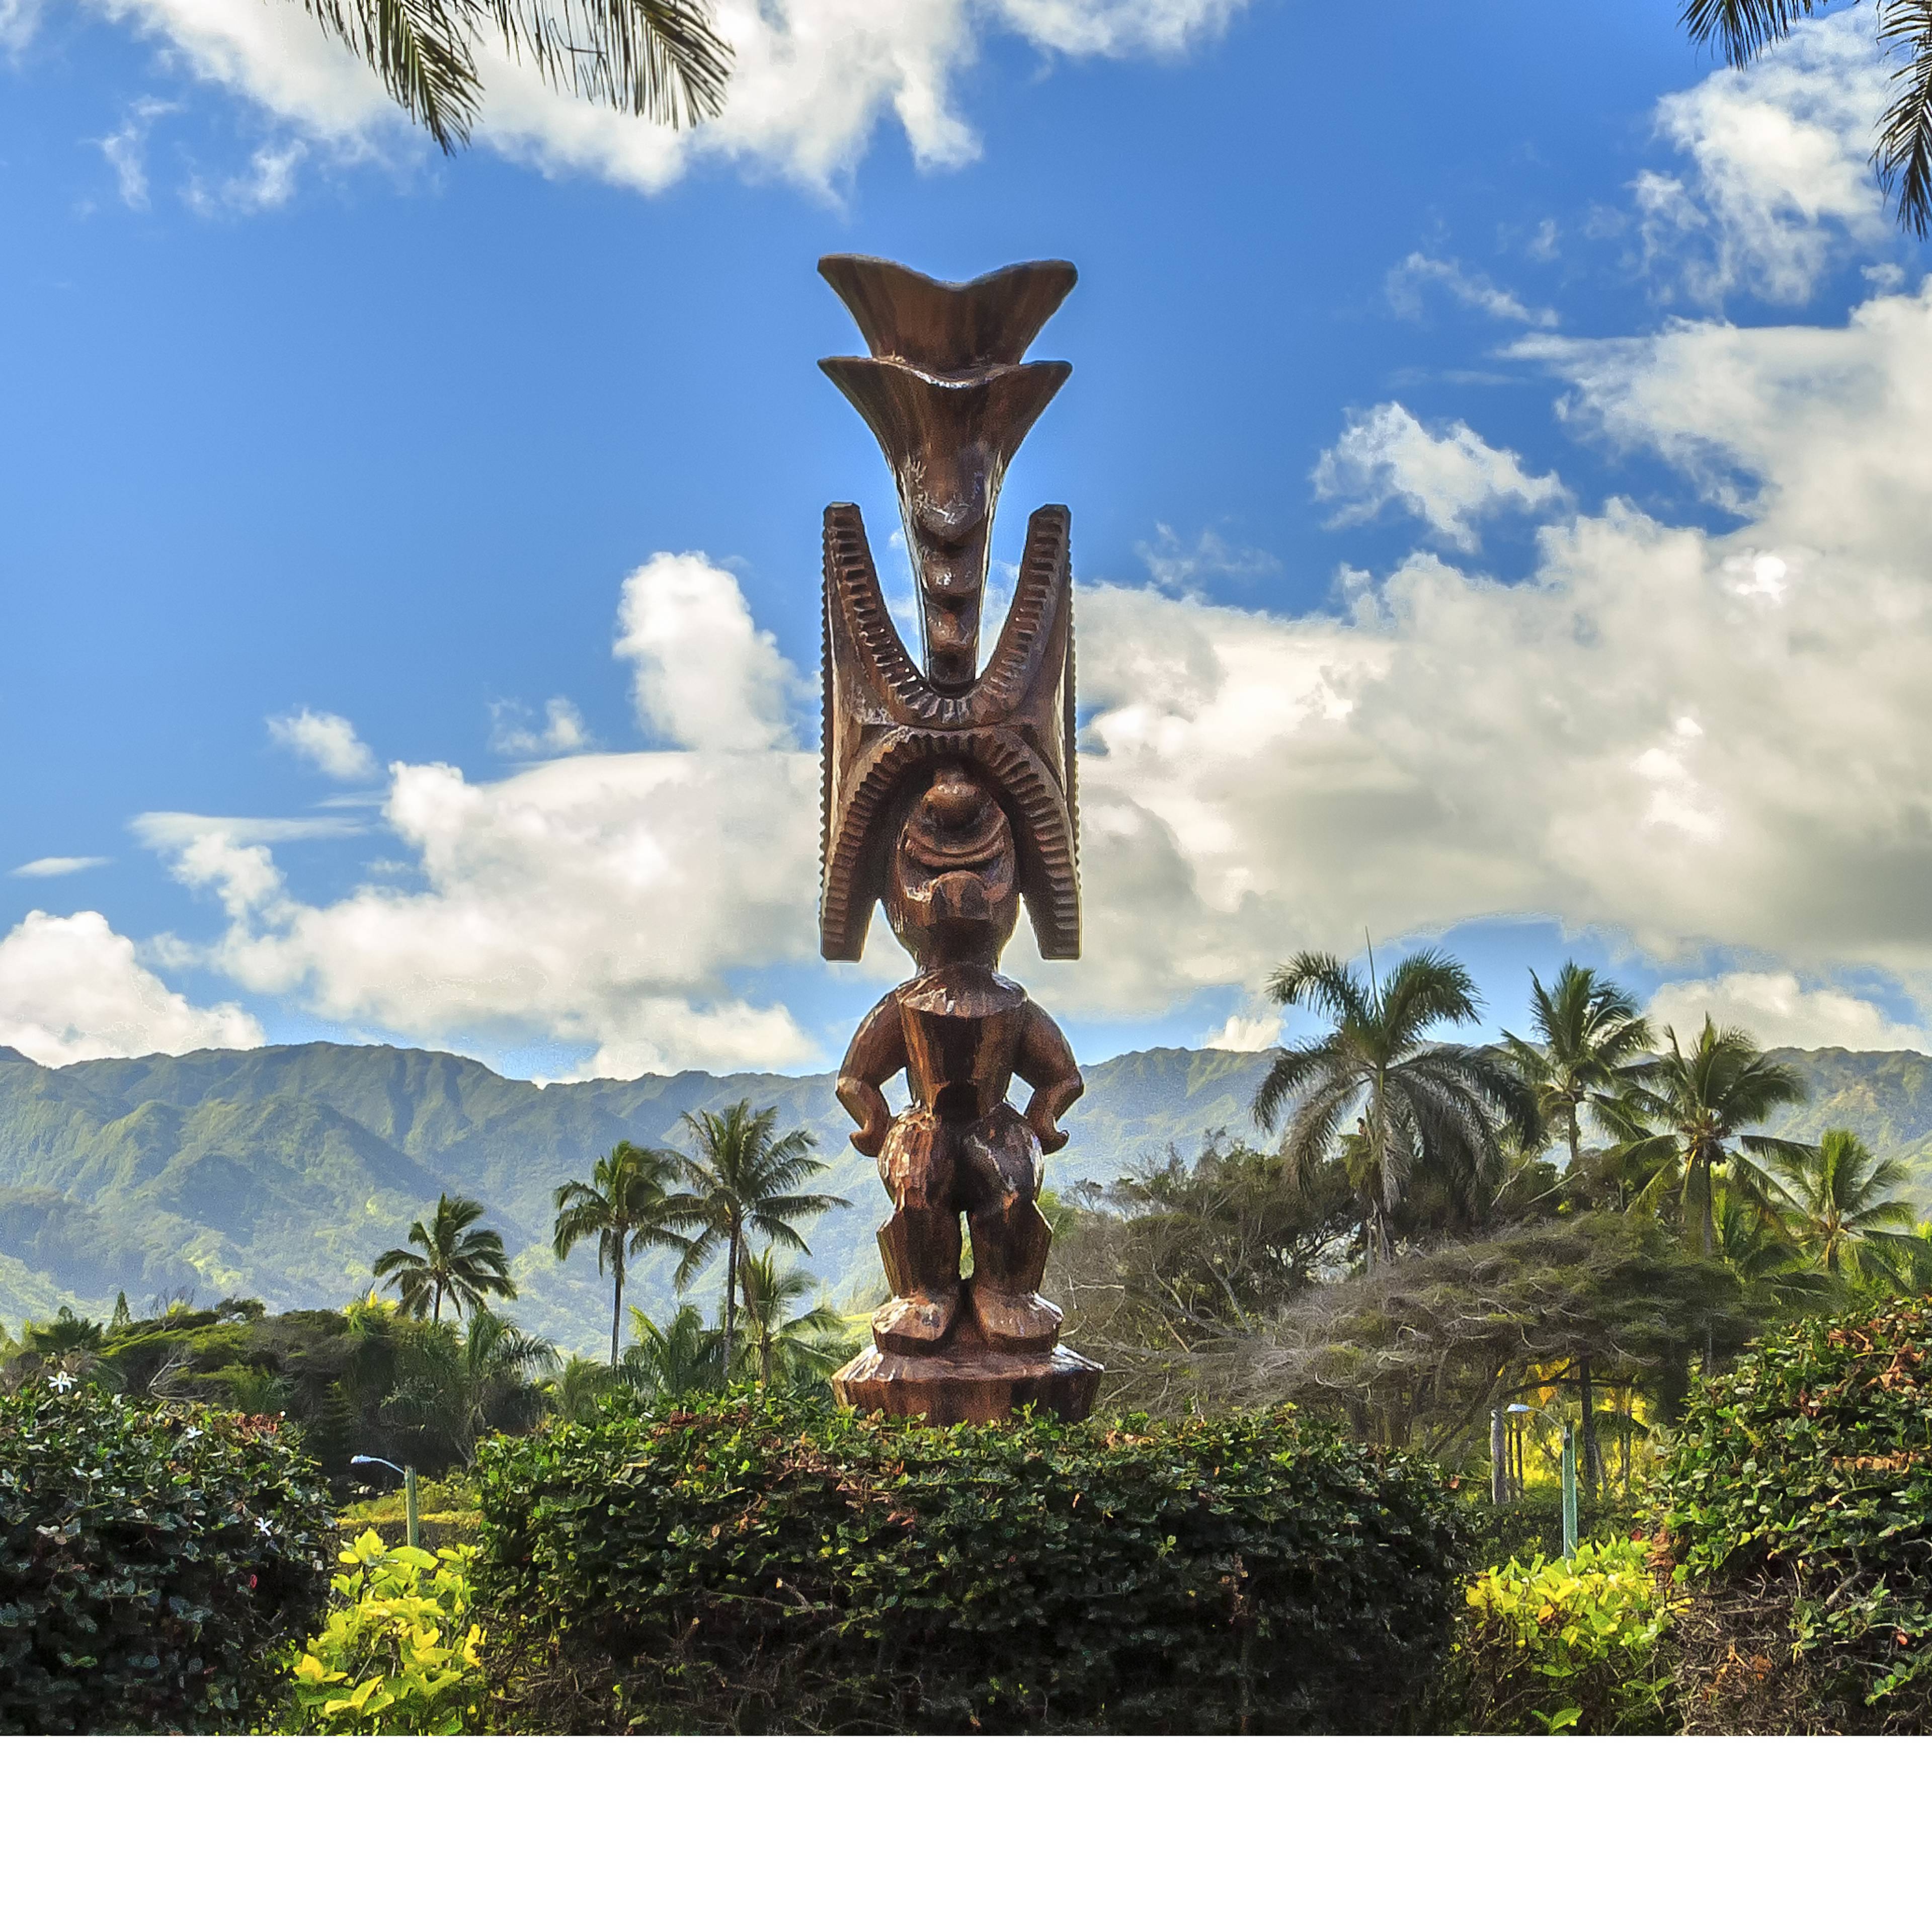 Individuelle Natur Reisen Hawaii - Reise jetzt individuell gestalten